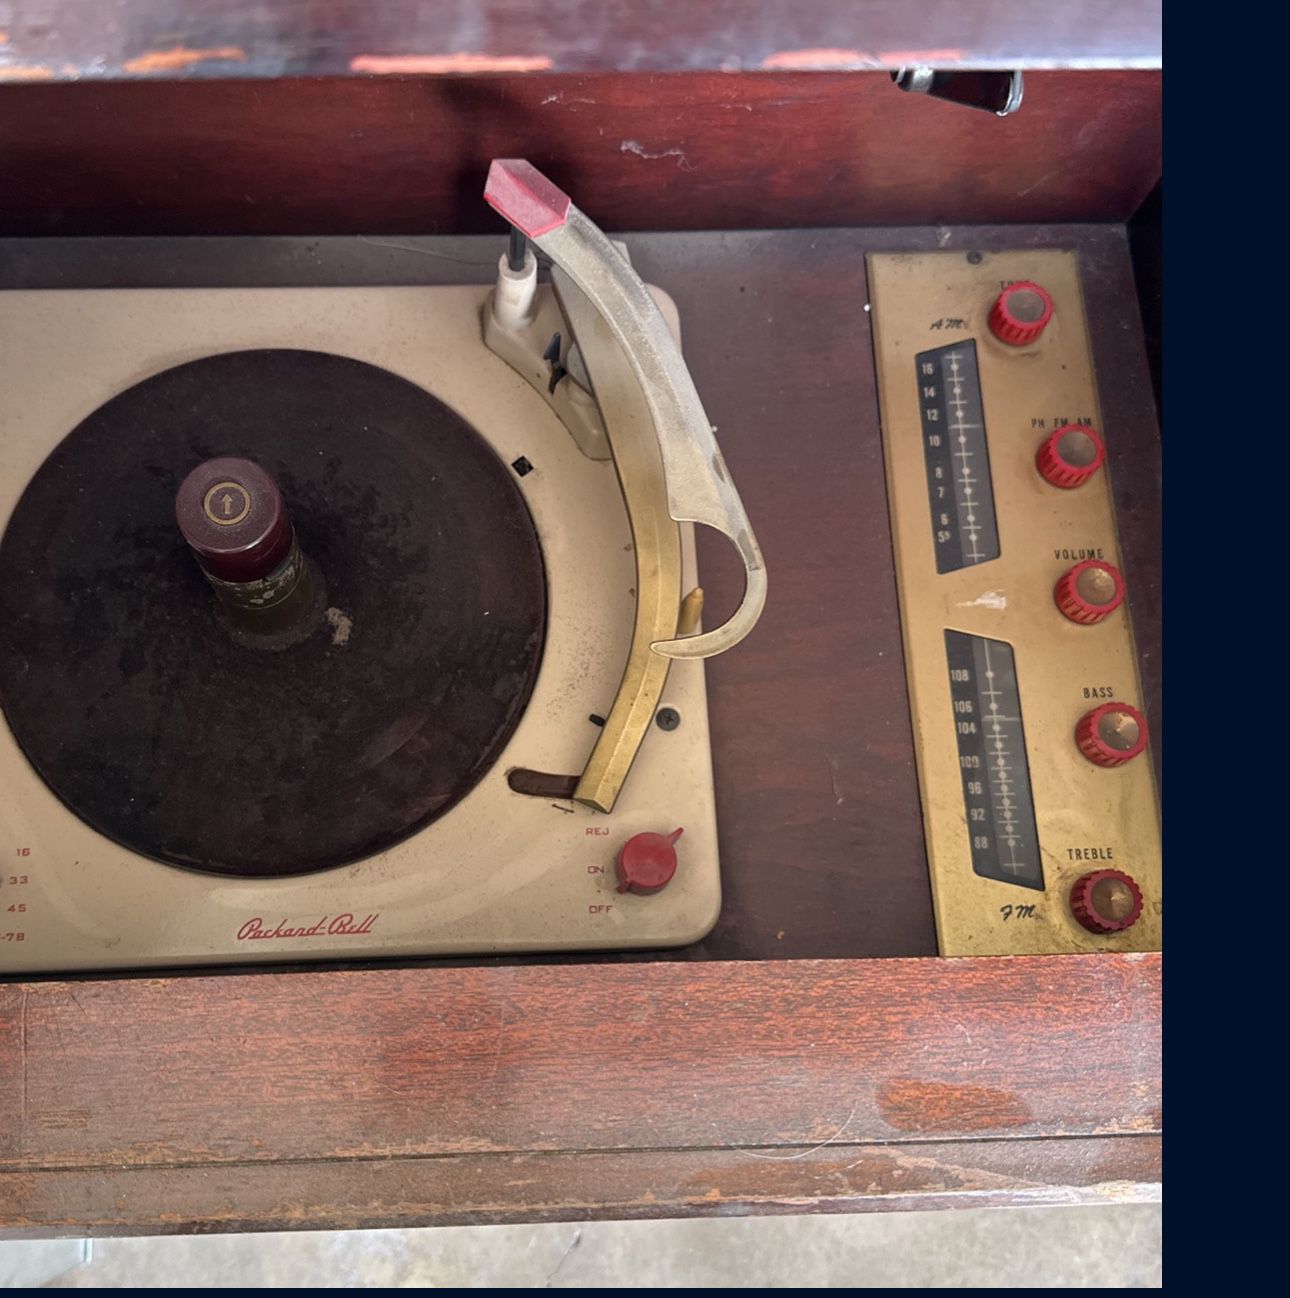 Packard Bell Hi-fi Record Player 